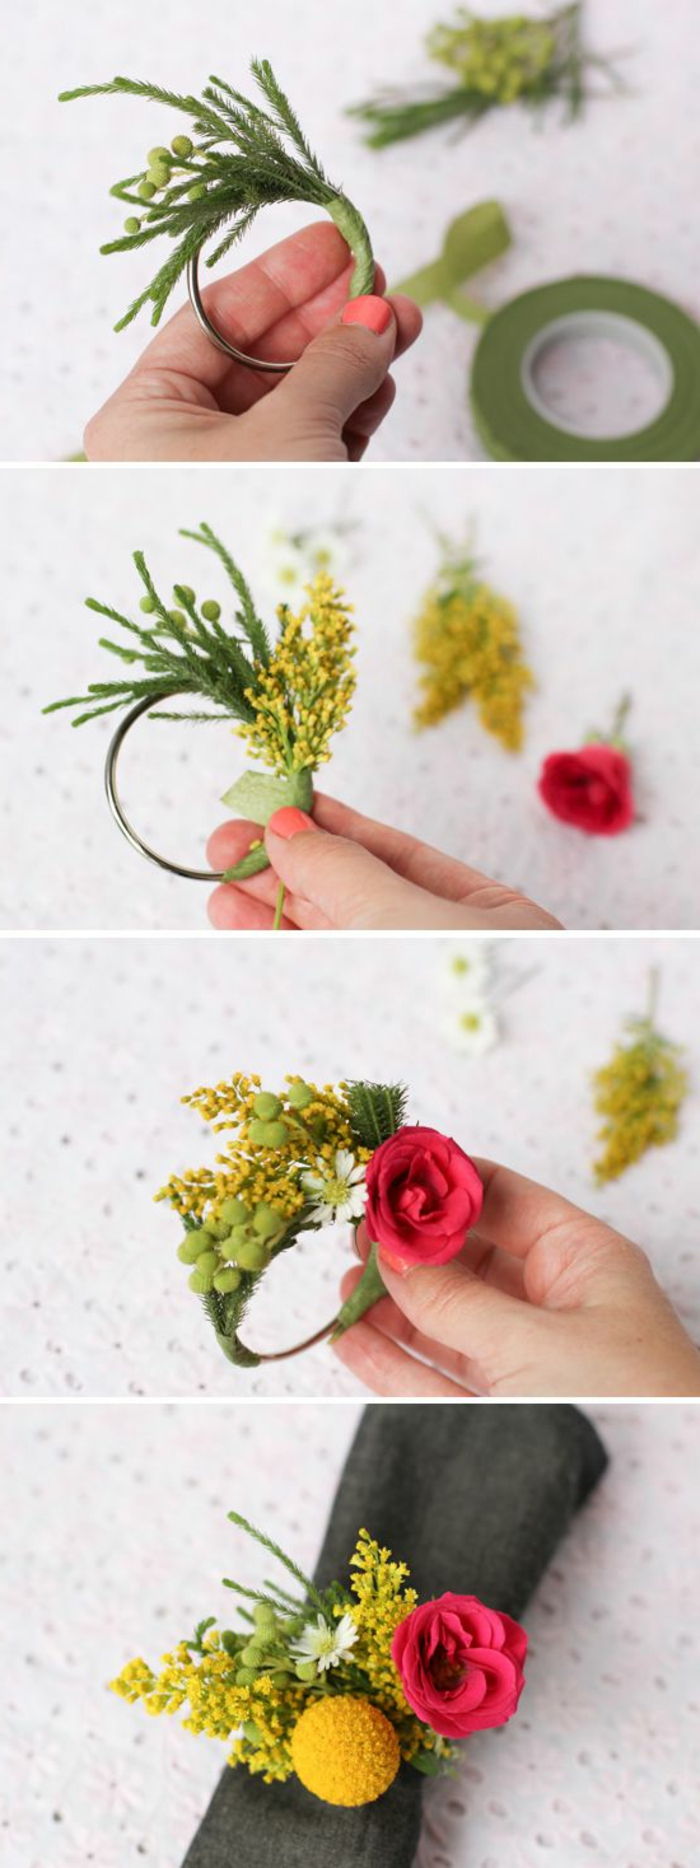 idéias legais de artesanato - faça você mesmo uma decoração de mesa, pequenas coroas com flores, guardanapos